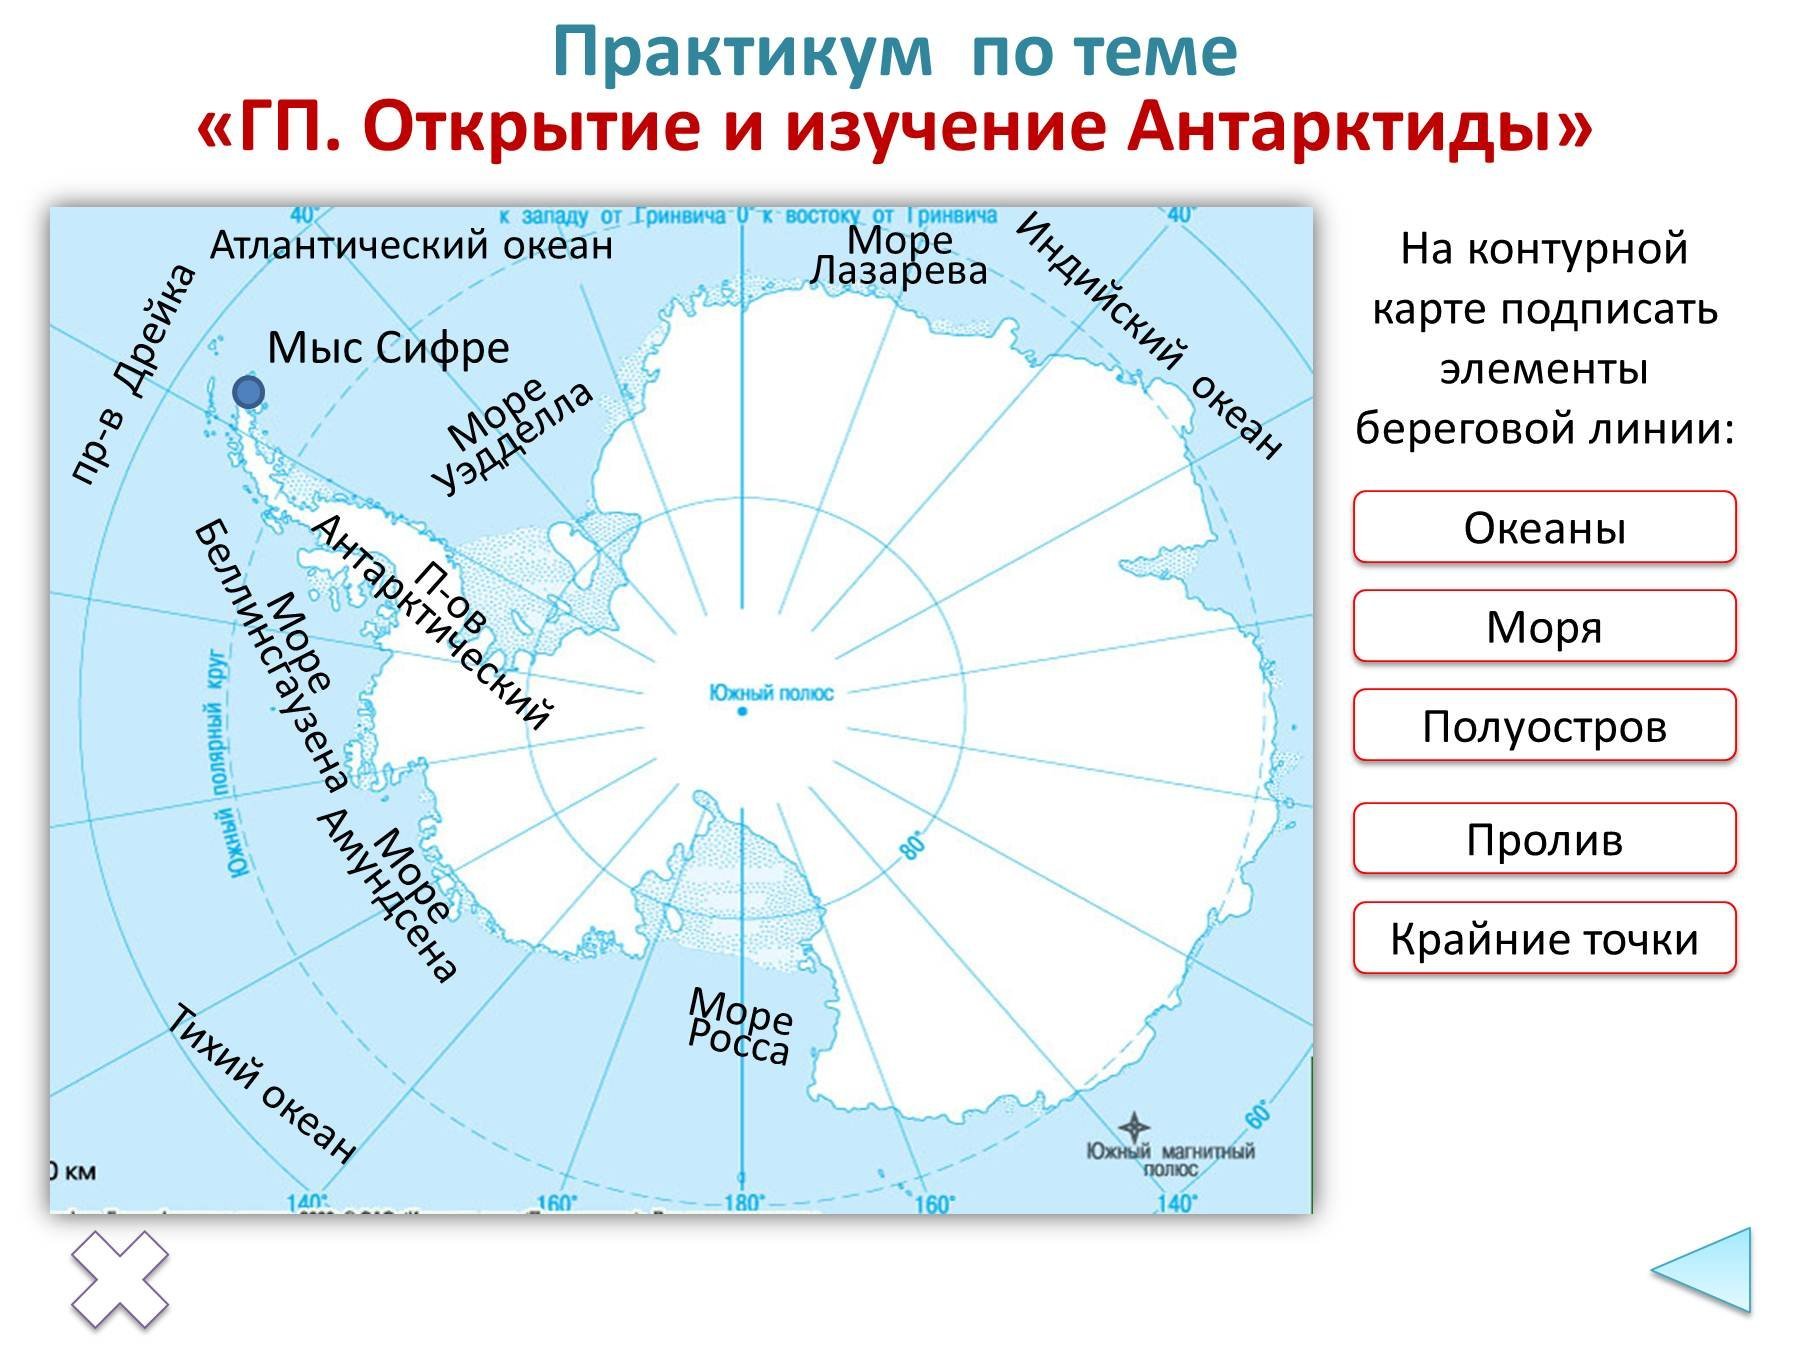 Какой полуостров самый южный. Моря: Амундсена, Беллинсгаузена, Росса, Уэдделла.. Мыс Сифре на карте Антарктиды. Море Лазарева на карте Антарктиды. Открытие моря Уэдделла.